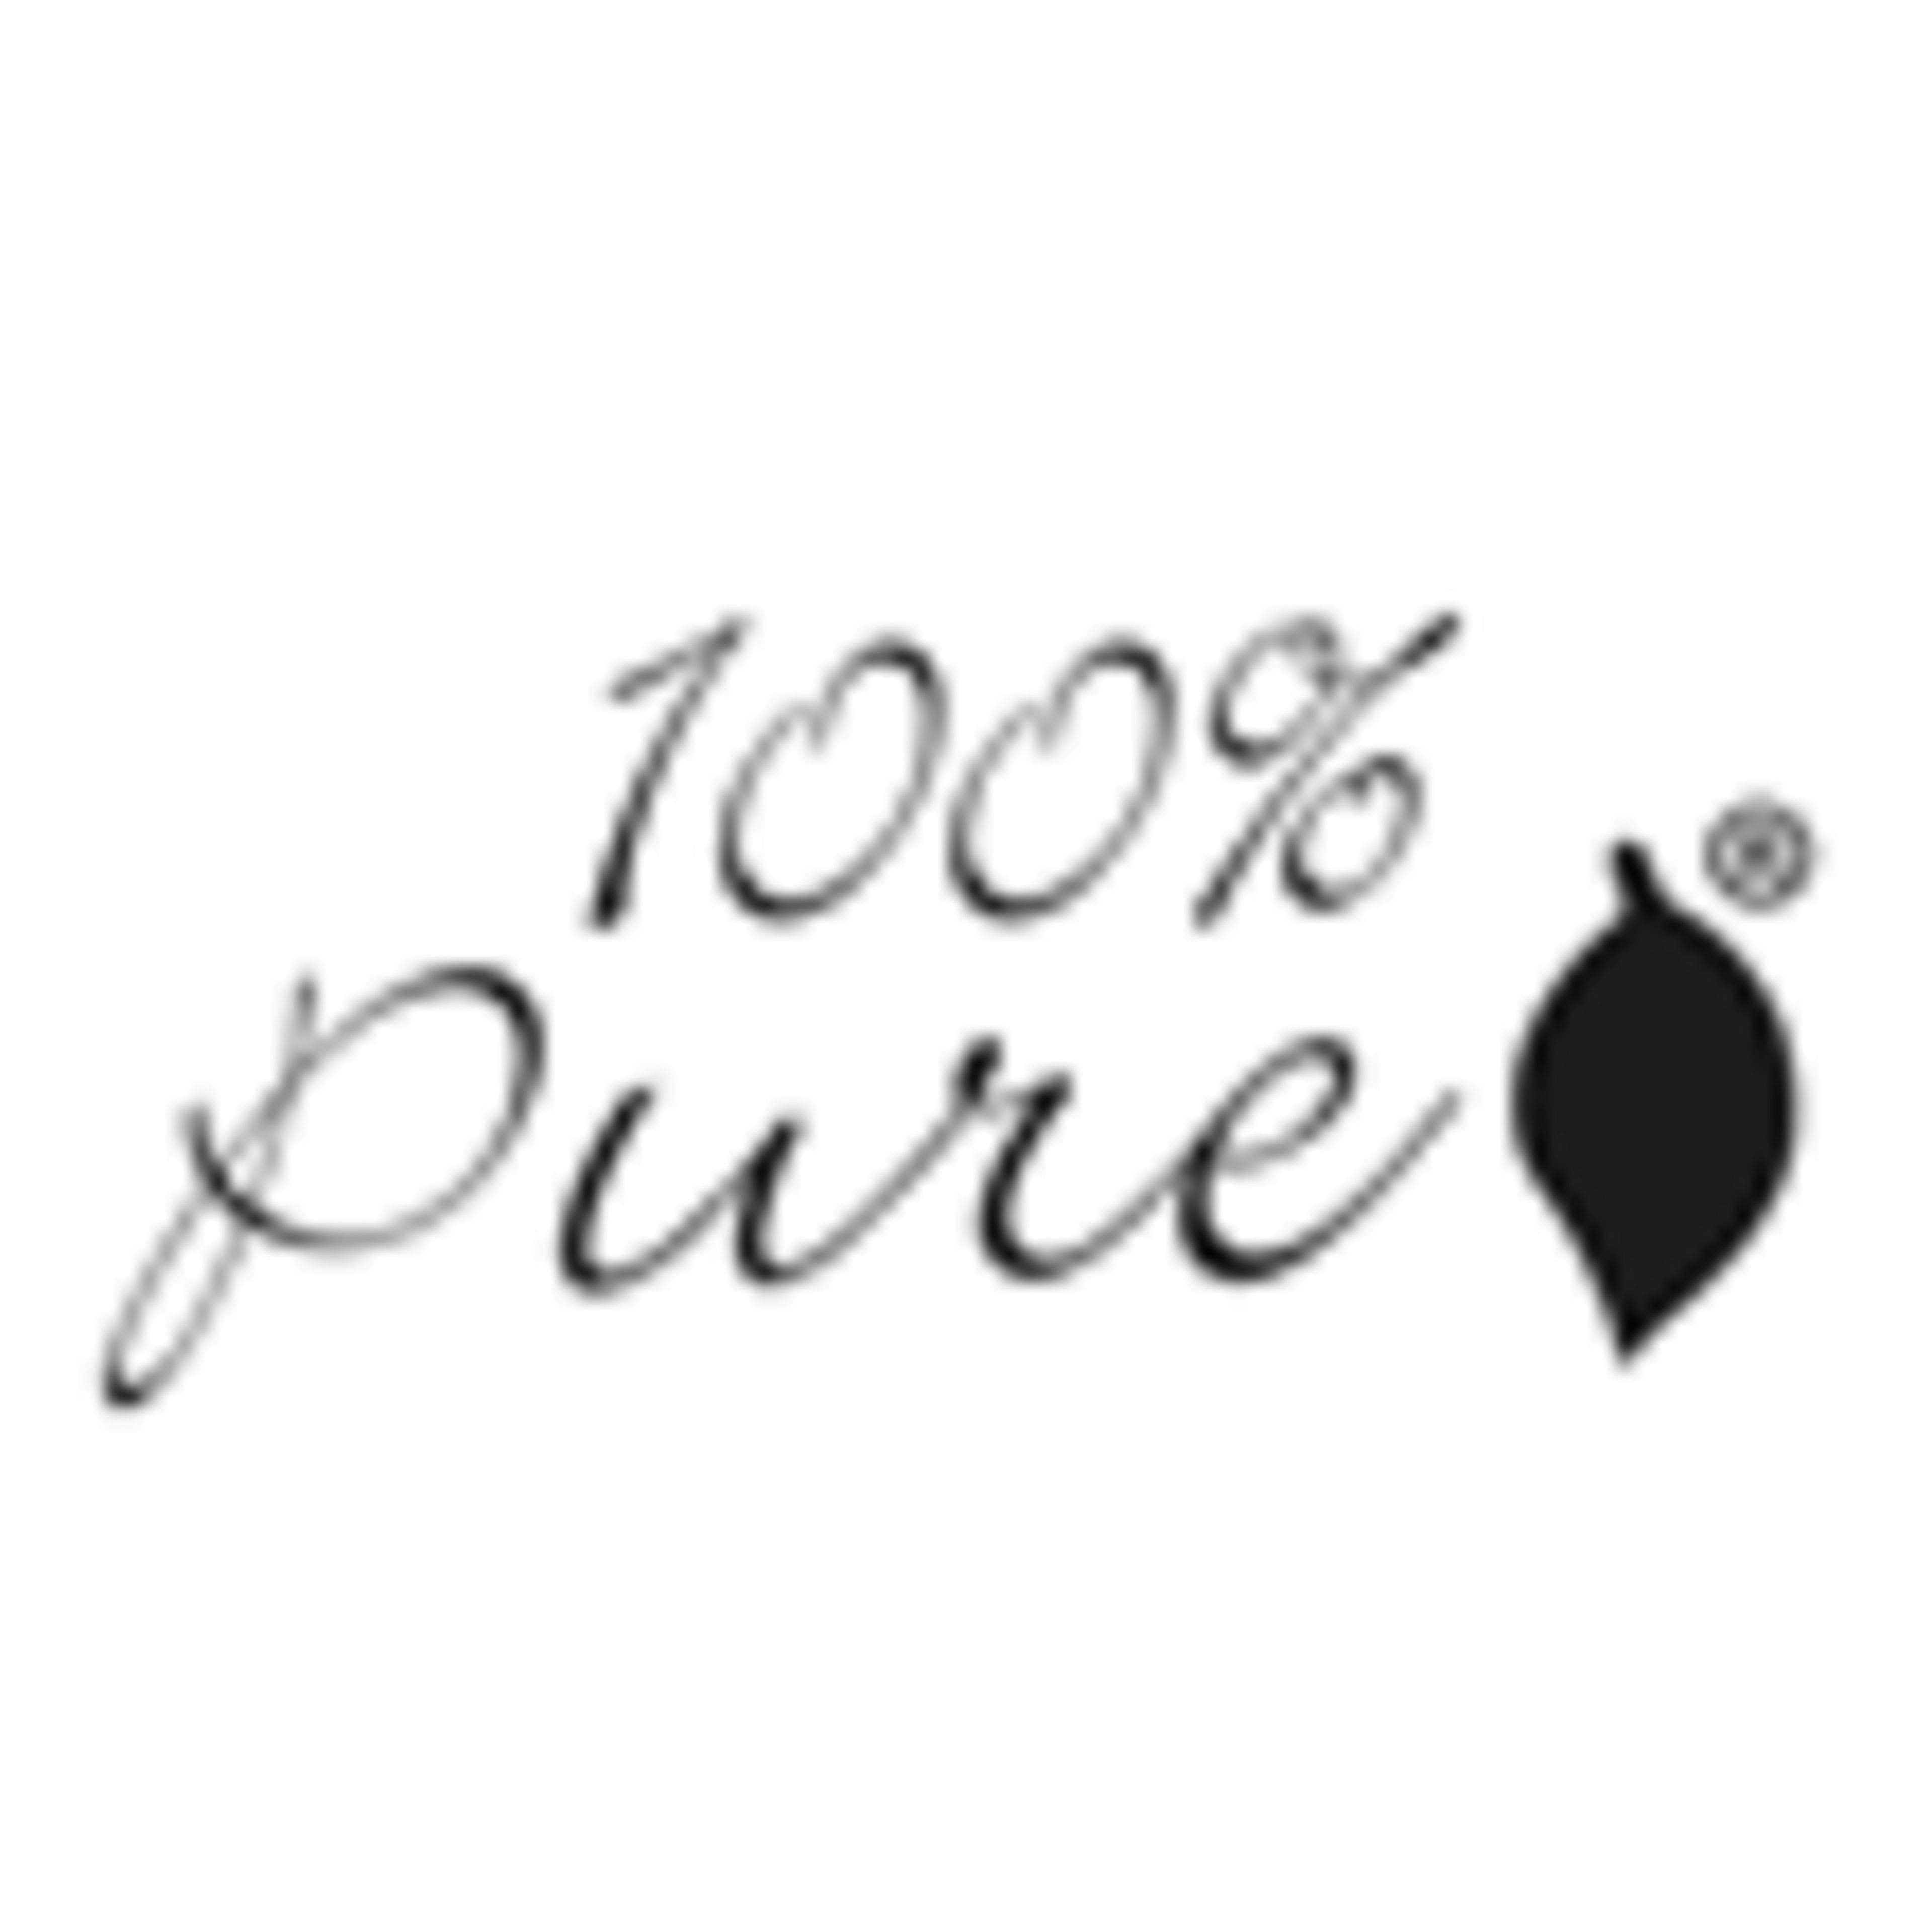 100 Percent Pure Code